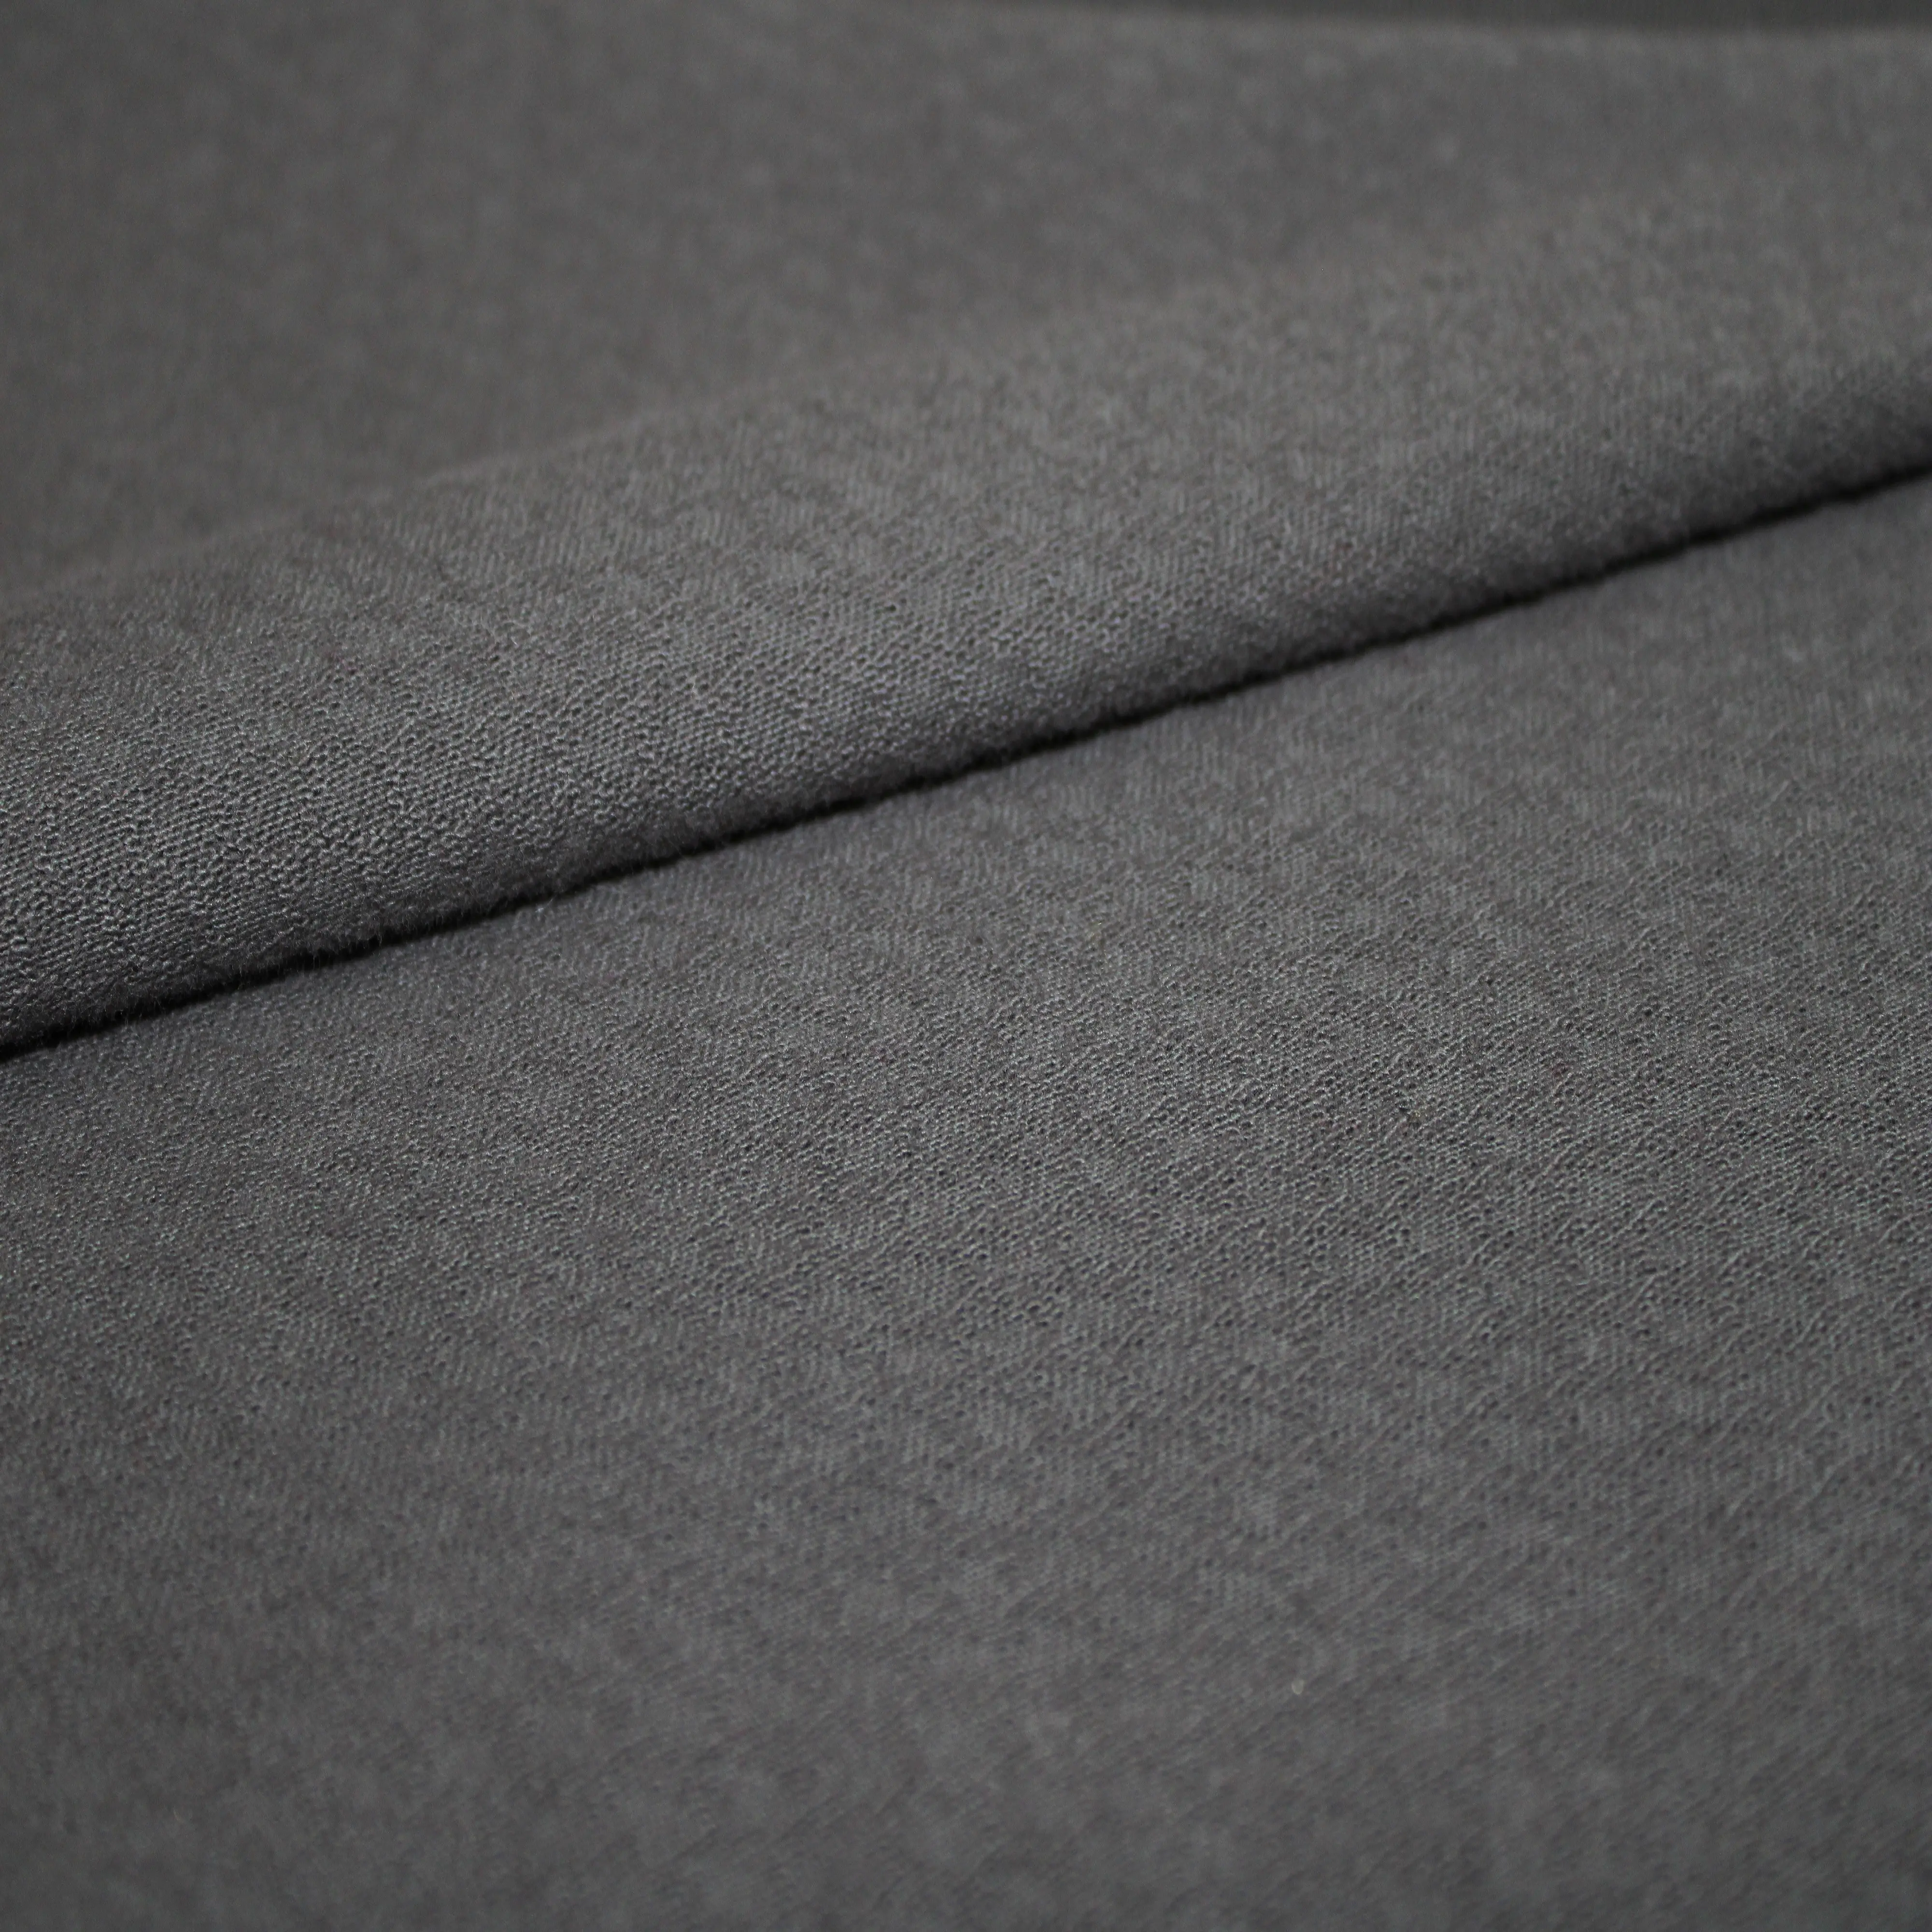 Recién llegados, tela de punto de malla de algodón 100% puro transpirable suave personalizada de alta calidad para ropa, ropa